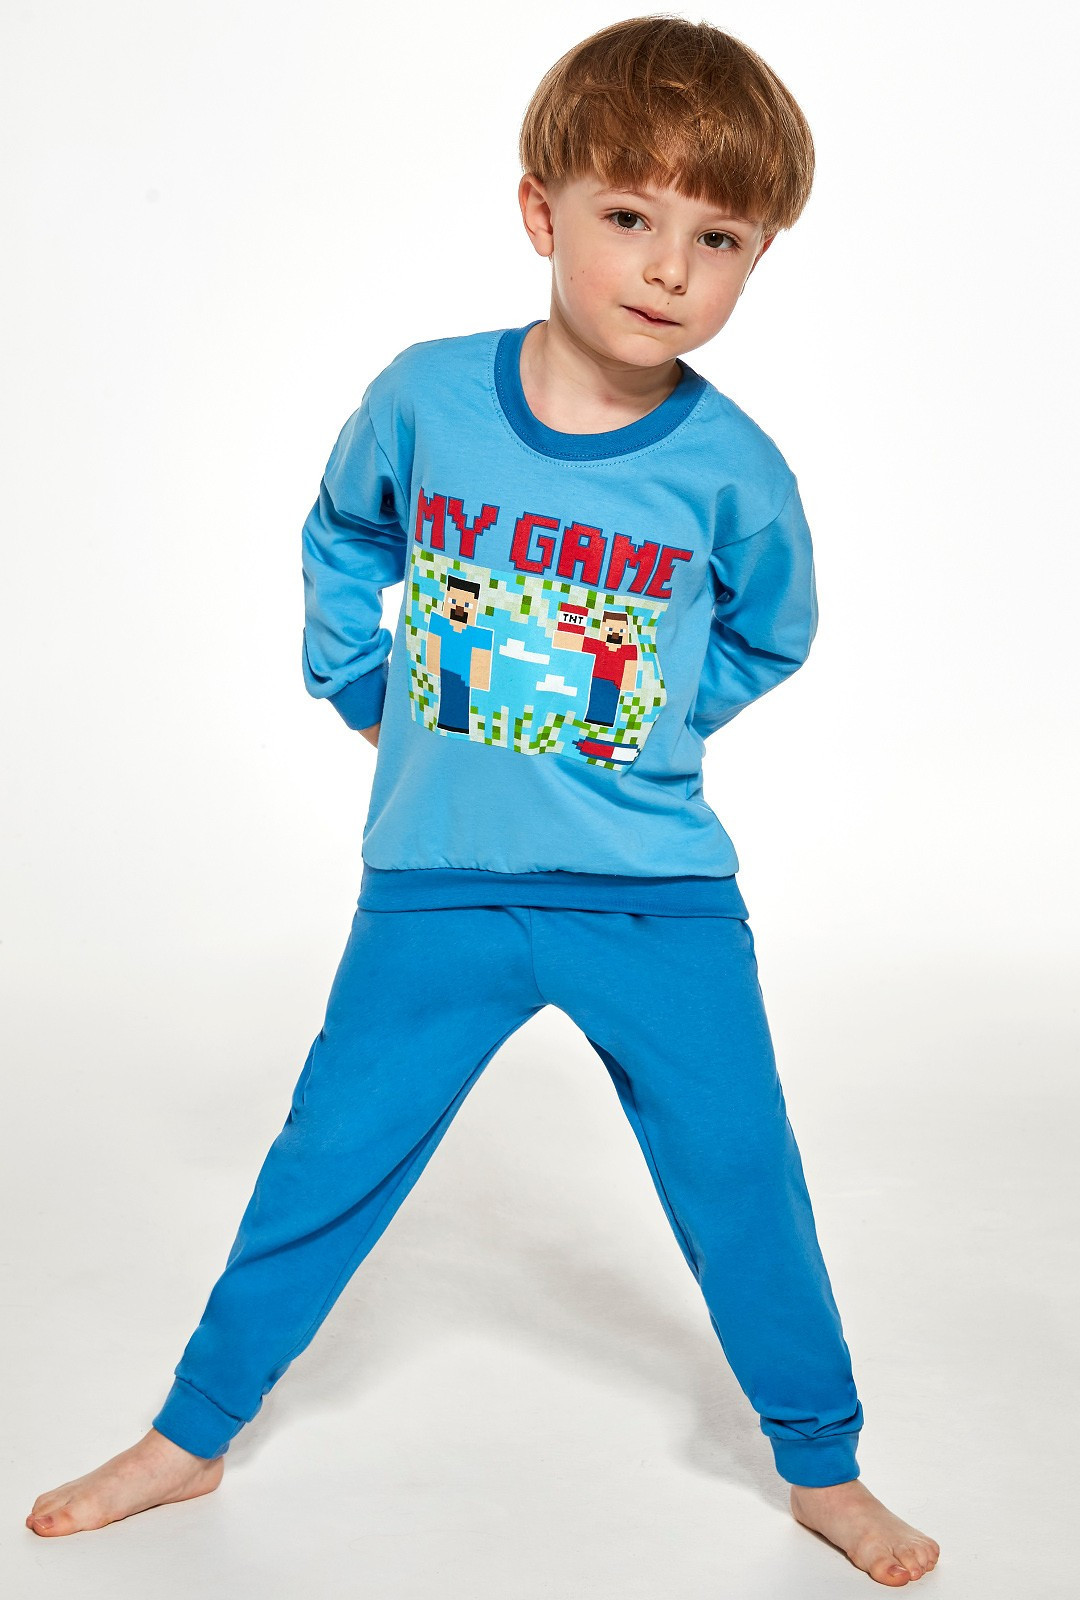 Chlapecké pyžamo Cornette Kids Boy 477/147 My Game dł/r 86-128 modrá 110-116